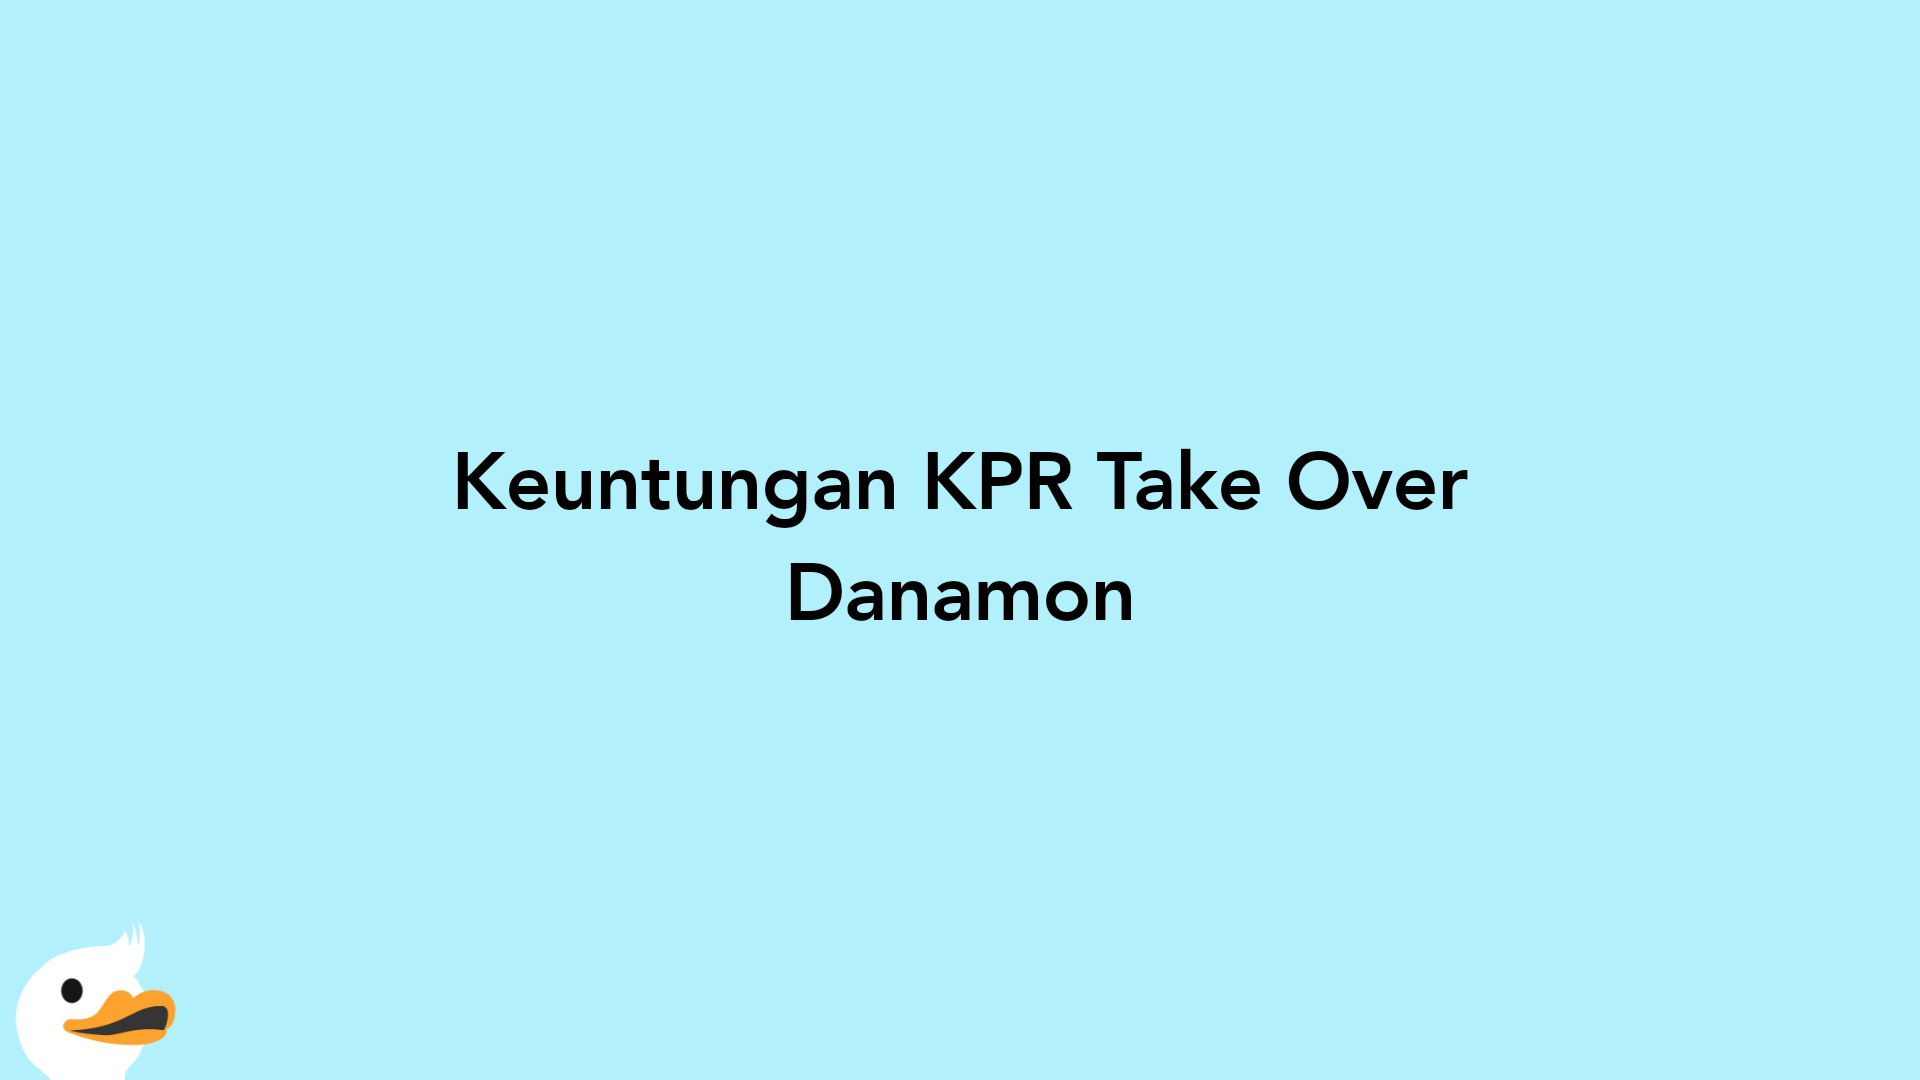 Keuntungan KPR Take Over Danamon